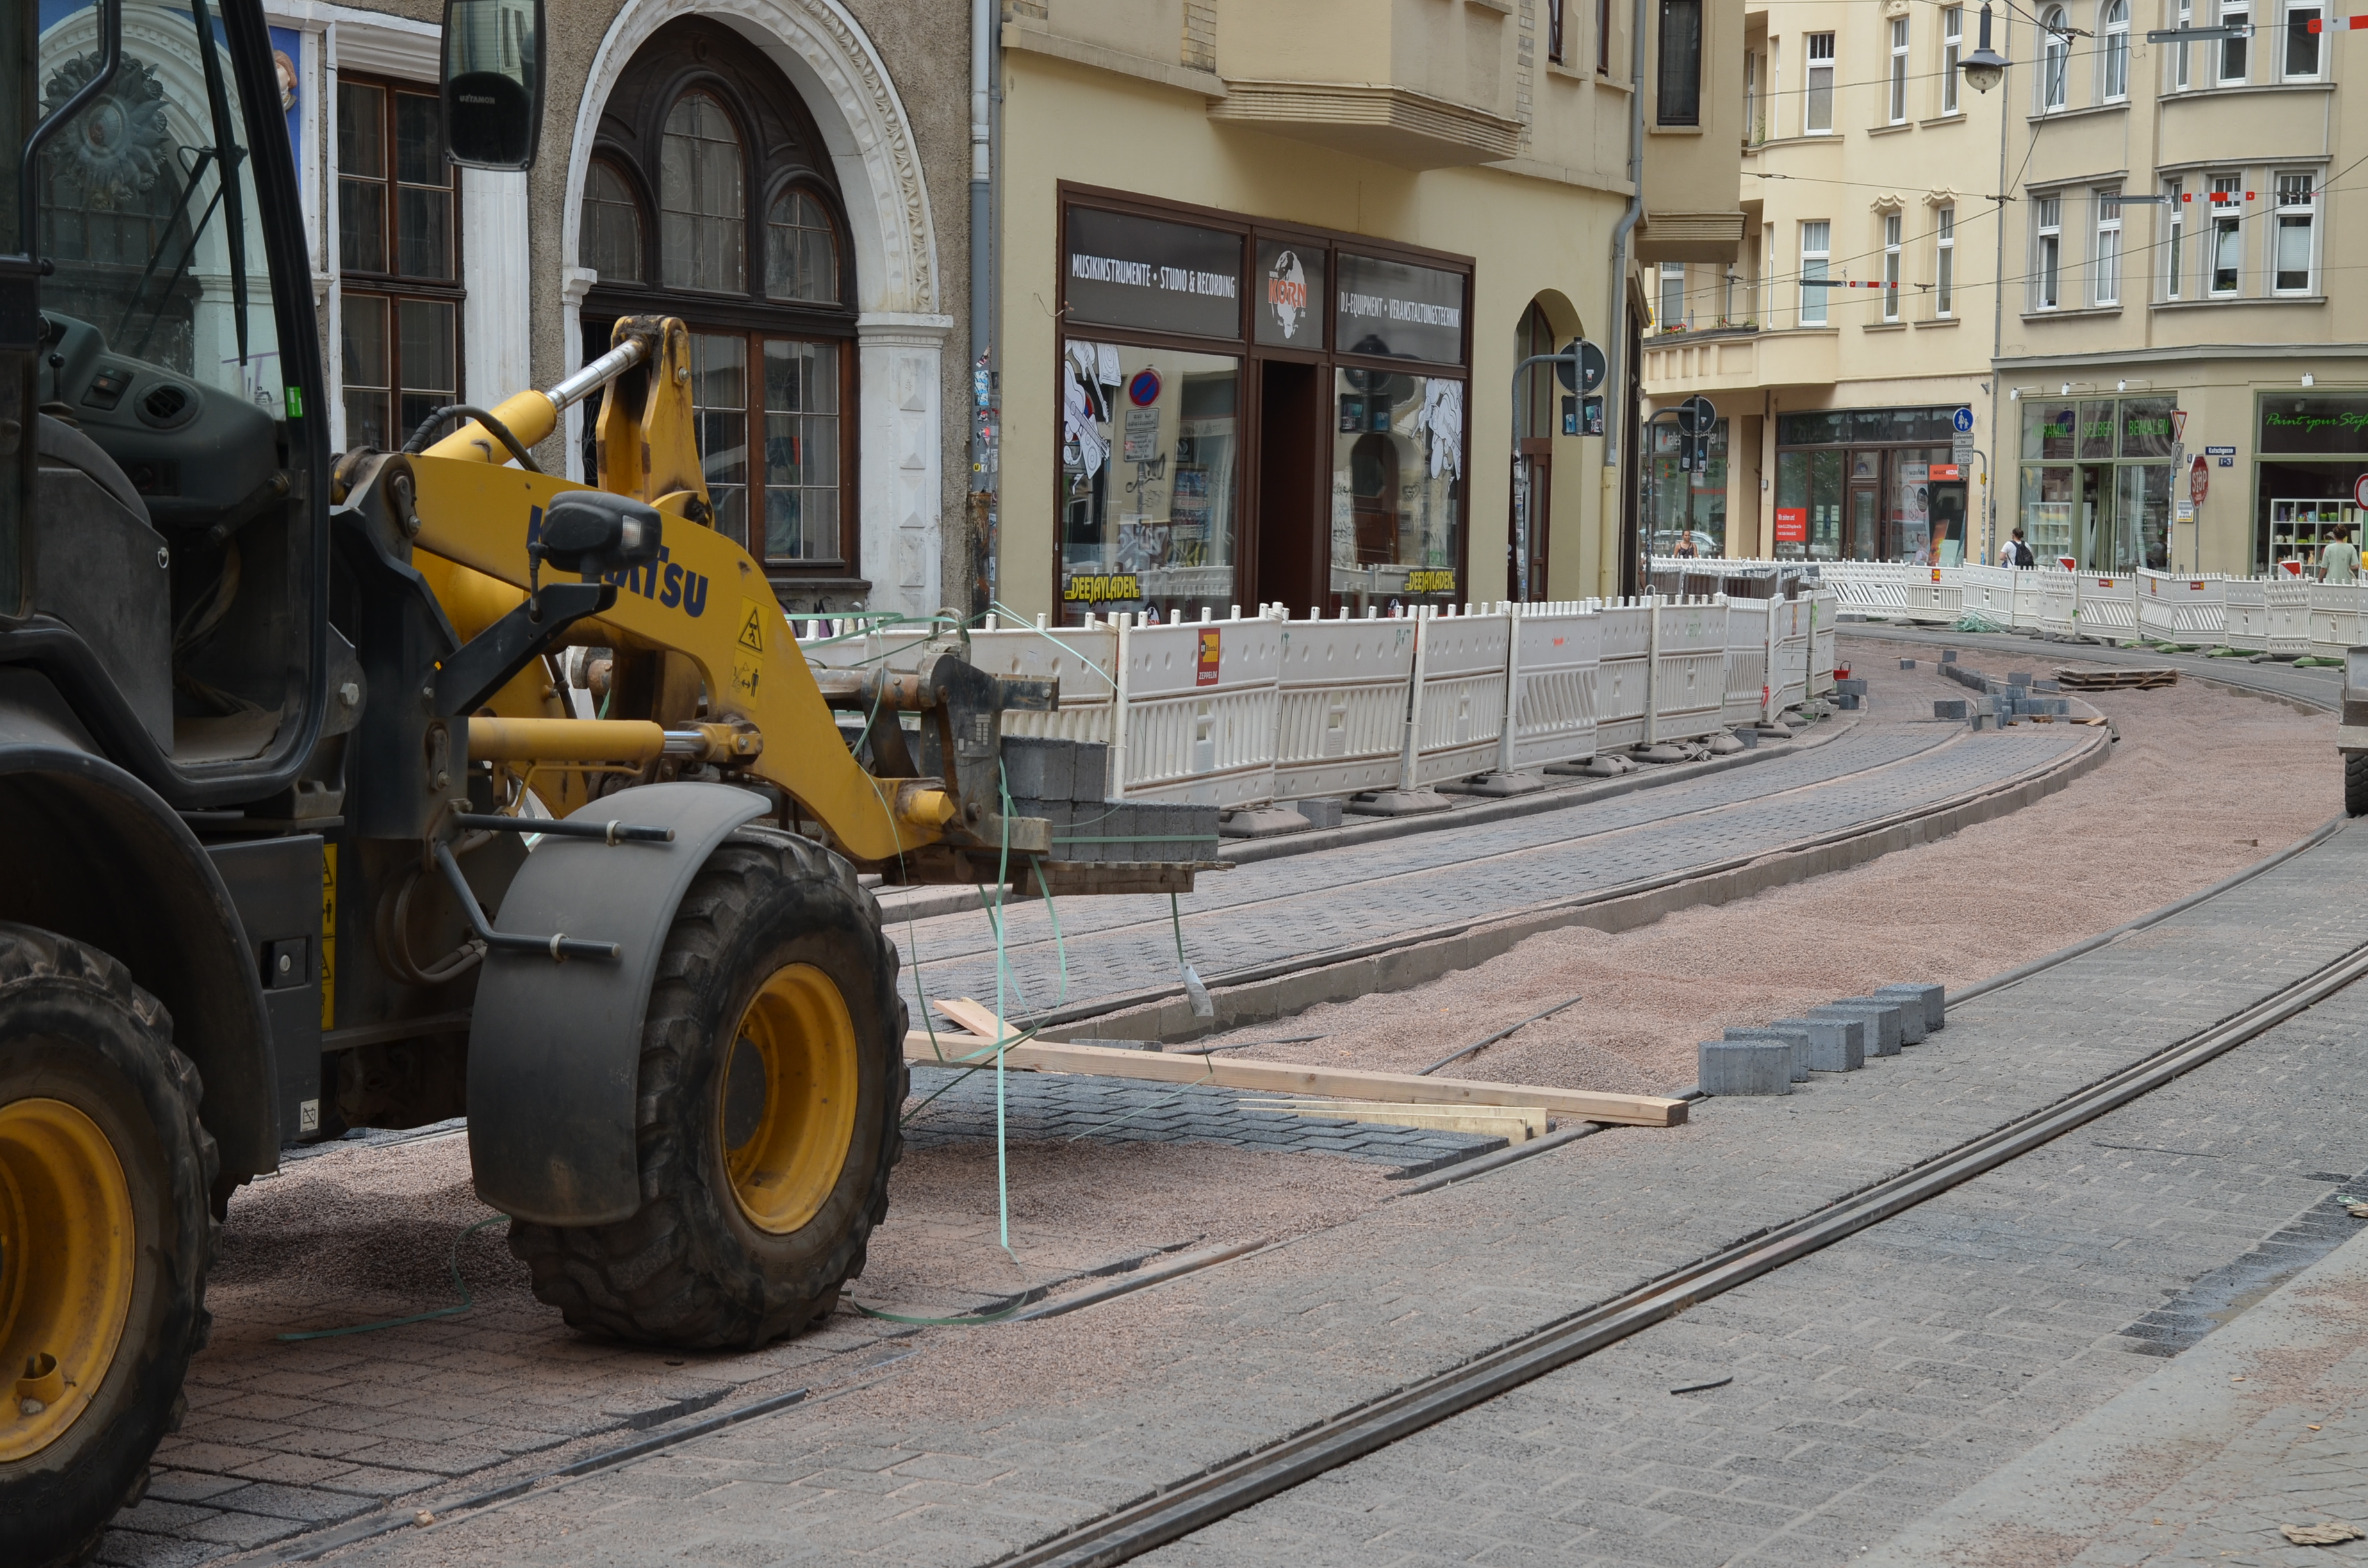 Das Foto zeigt den weiteren Verlauf der Rannischen Straße. Links im Bild ist ein gelbes Baustellenfahrzeug abgebildet, rechts die Straße mit neuen Gleisen und teilweise neuem Pflaster.